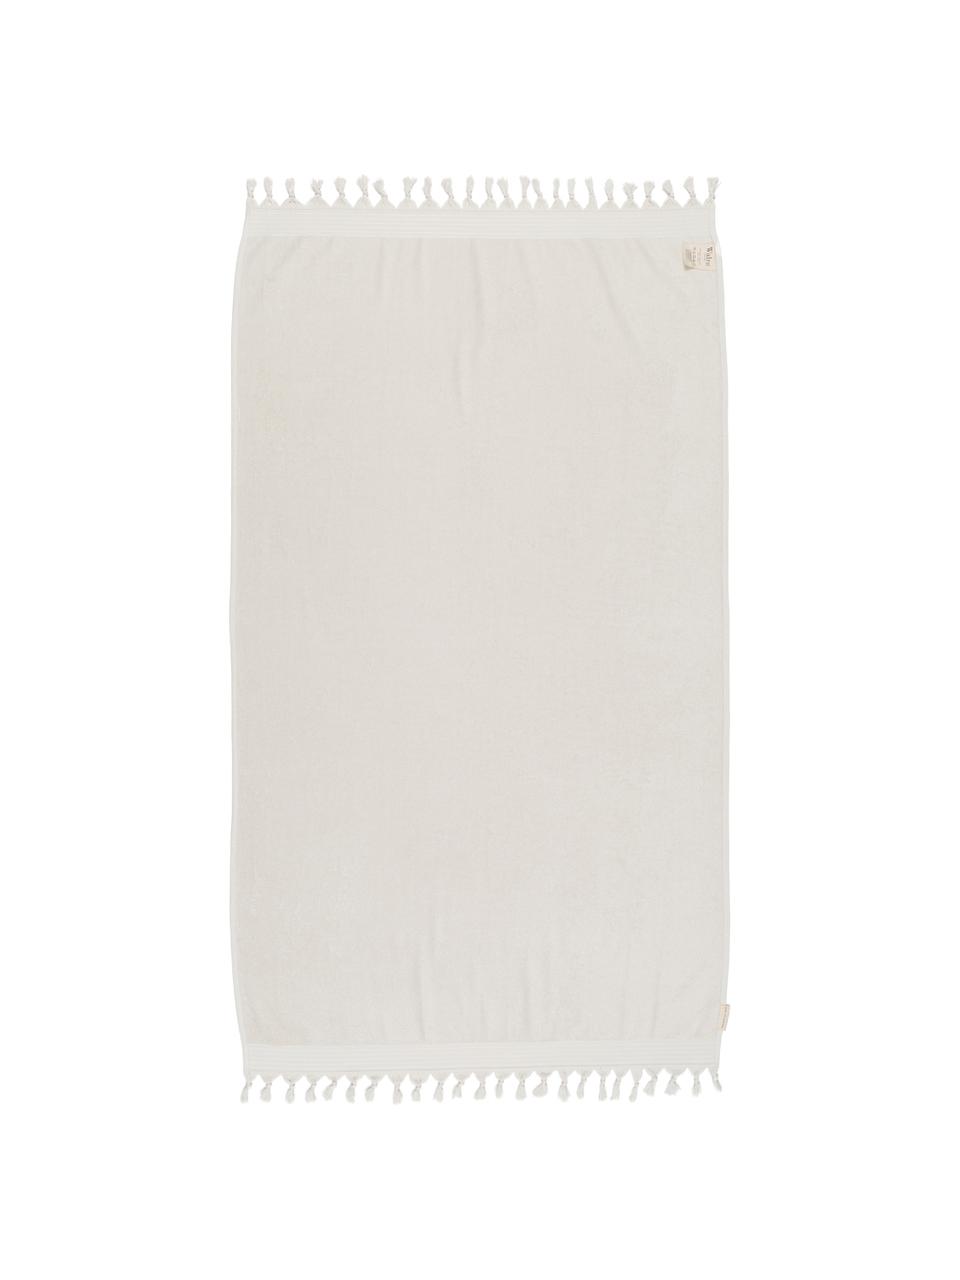 Hamamdoek Soft Cotton, Lichtbeige, wit, 100 x 180 cm